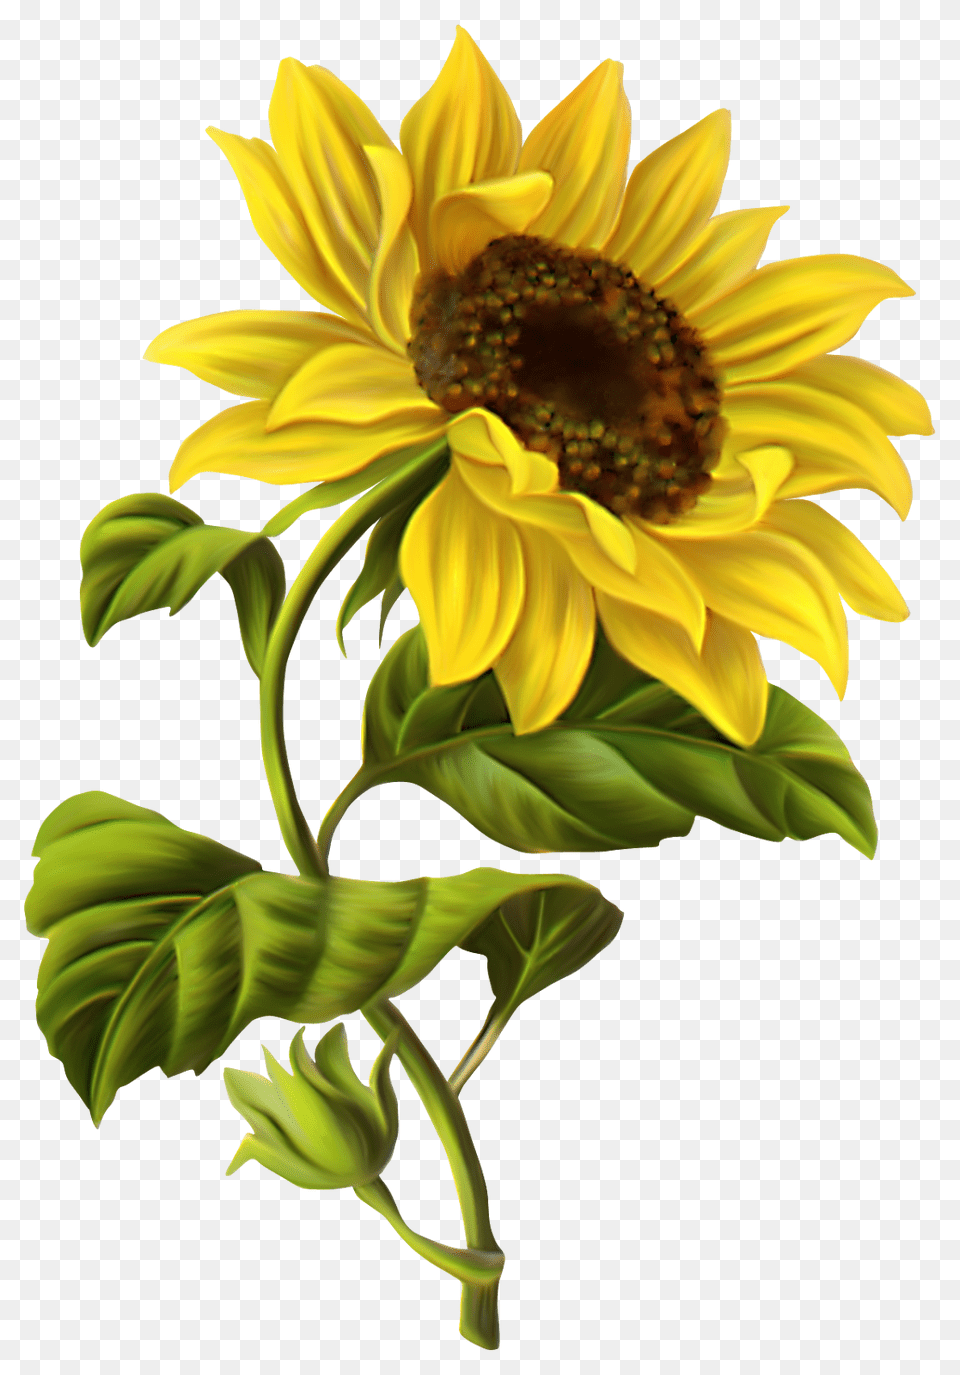 Sunflower Border Clip Art, Flower, Plant Png Image